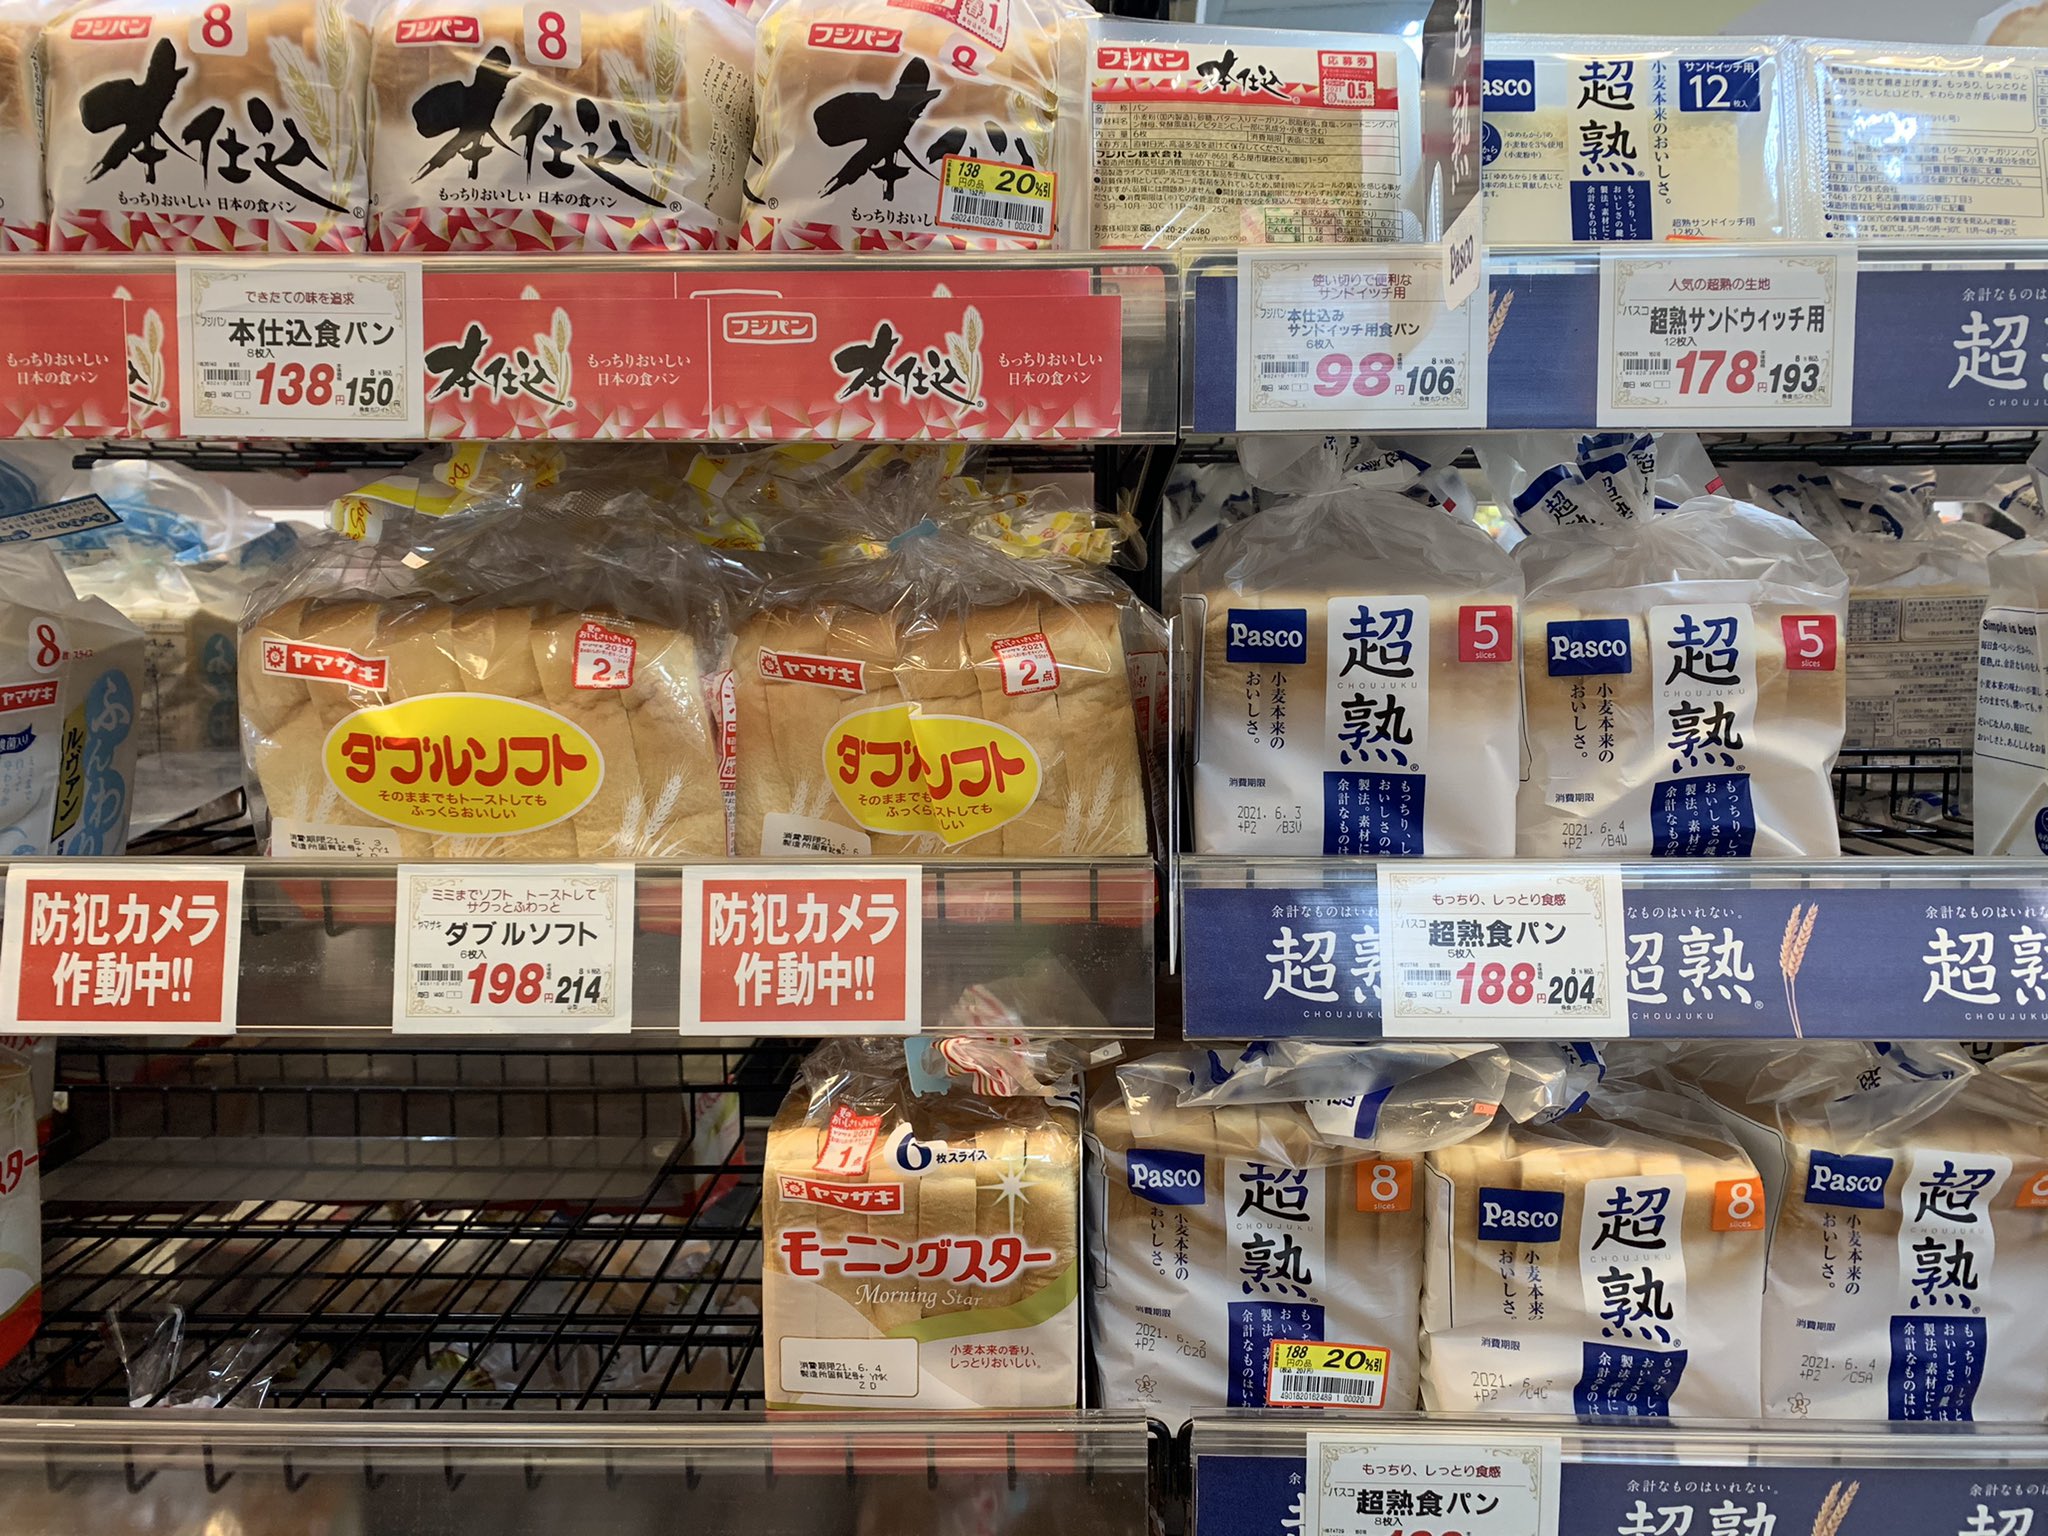 Ιαπωνία: Τμήματα αρουραίου βρέθηκαν σε ψωμί του τοστ δημοφιλούς εταιρείας